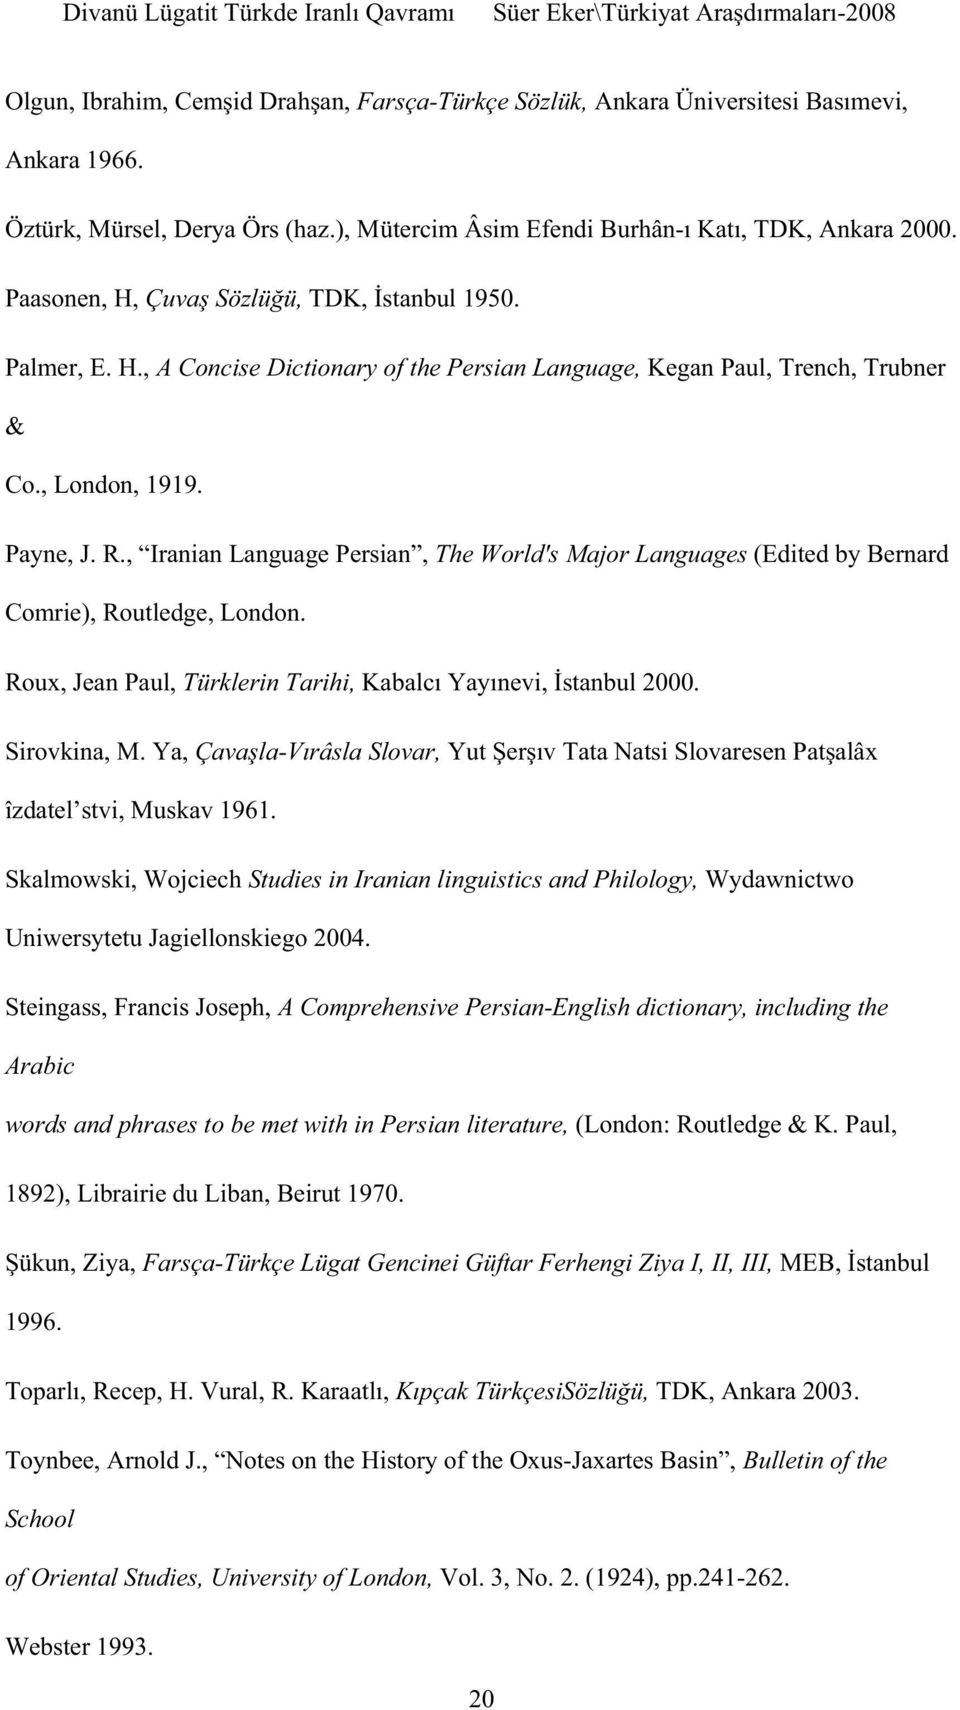 Ya, - îzdatel stvi, Muskav 1961. Skalmowski, Wojciech Studies in Iranian linguistics and Philology, Wydawnictwo Uniwersytetu Jagiellonskiego 2004.